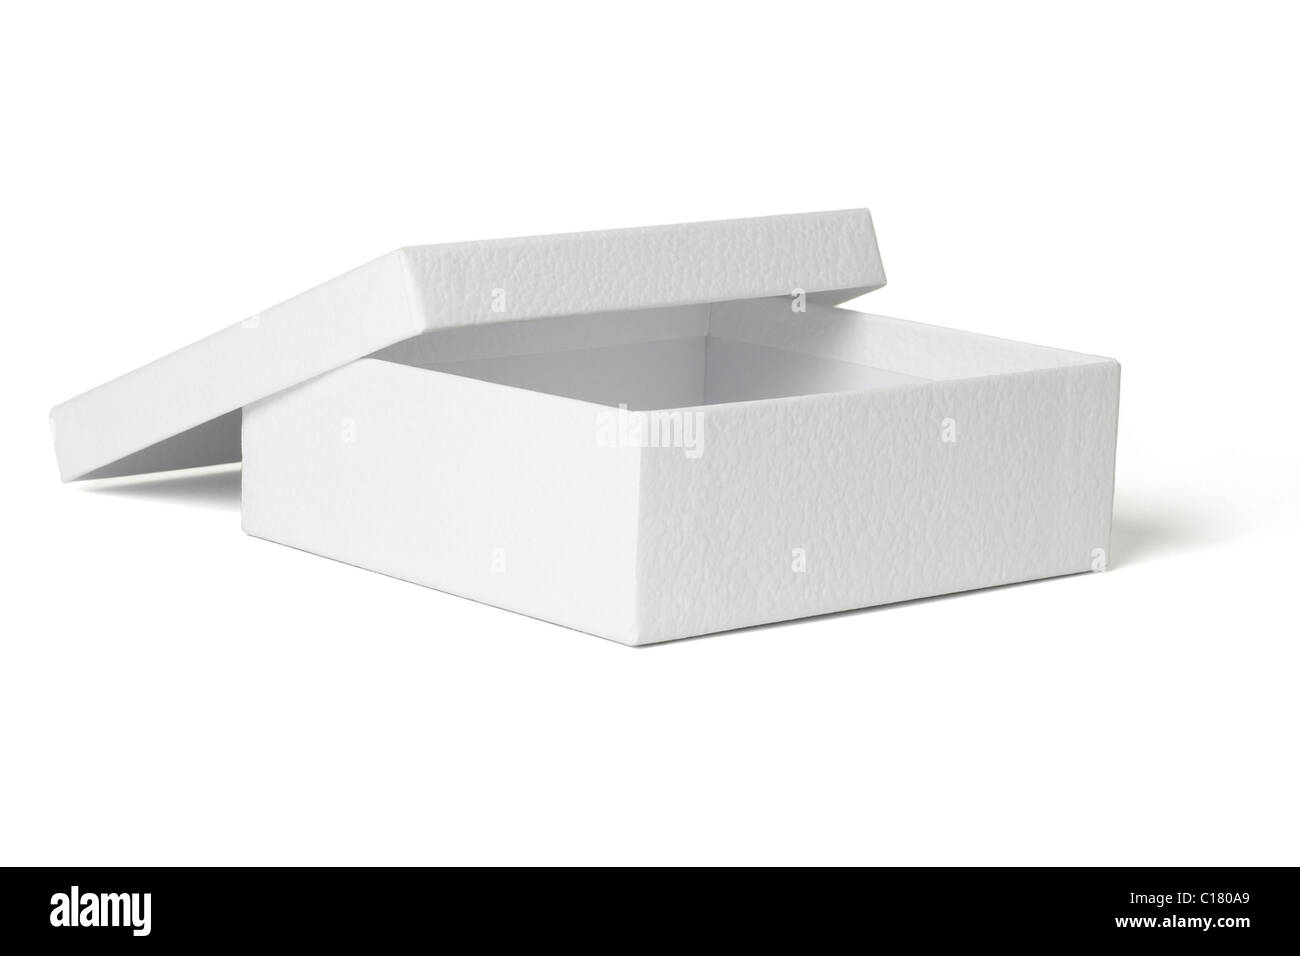 Empty gift box isolated on white background Stock Photo - Alamy